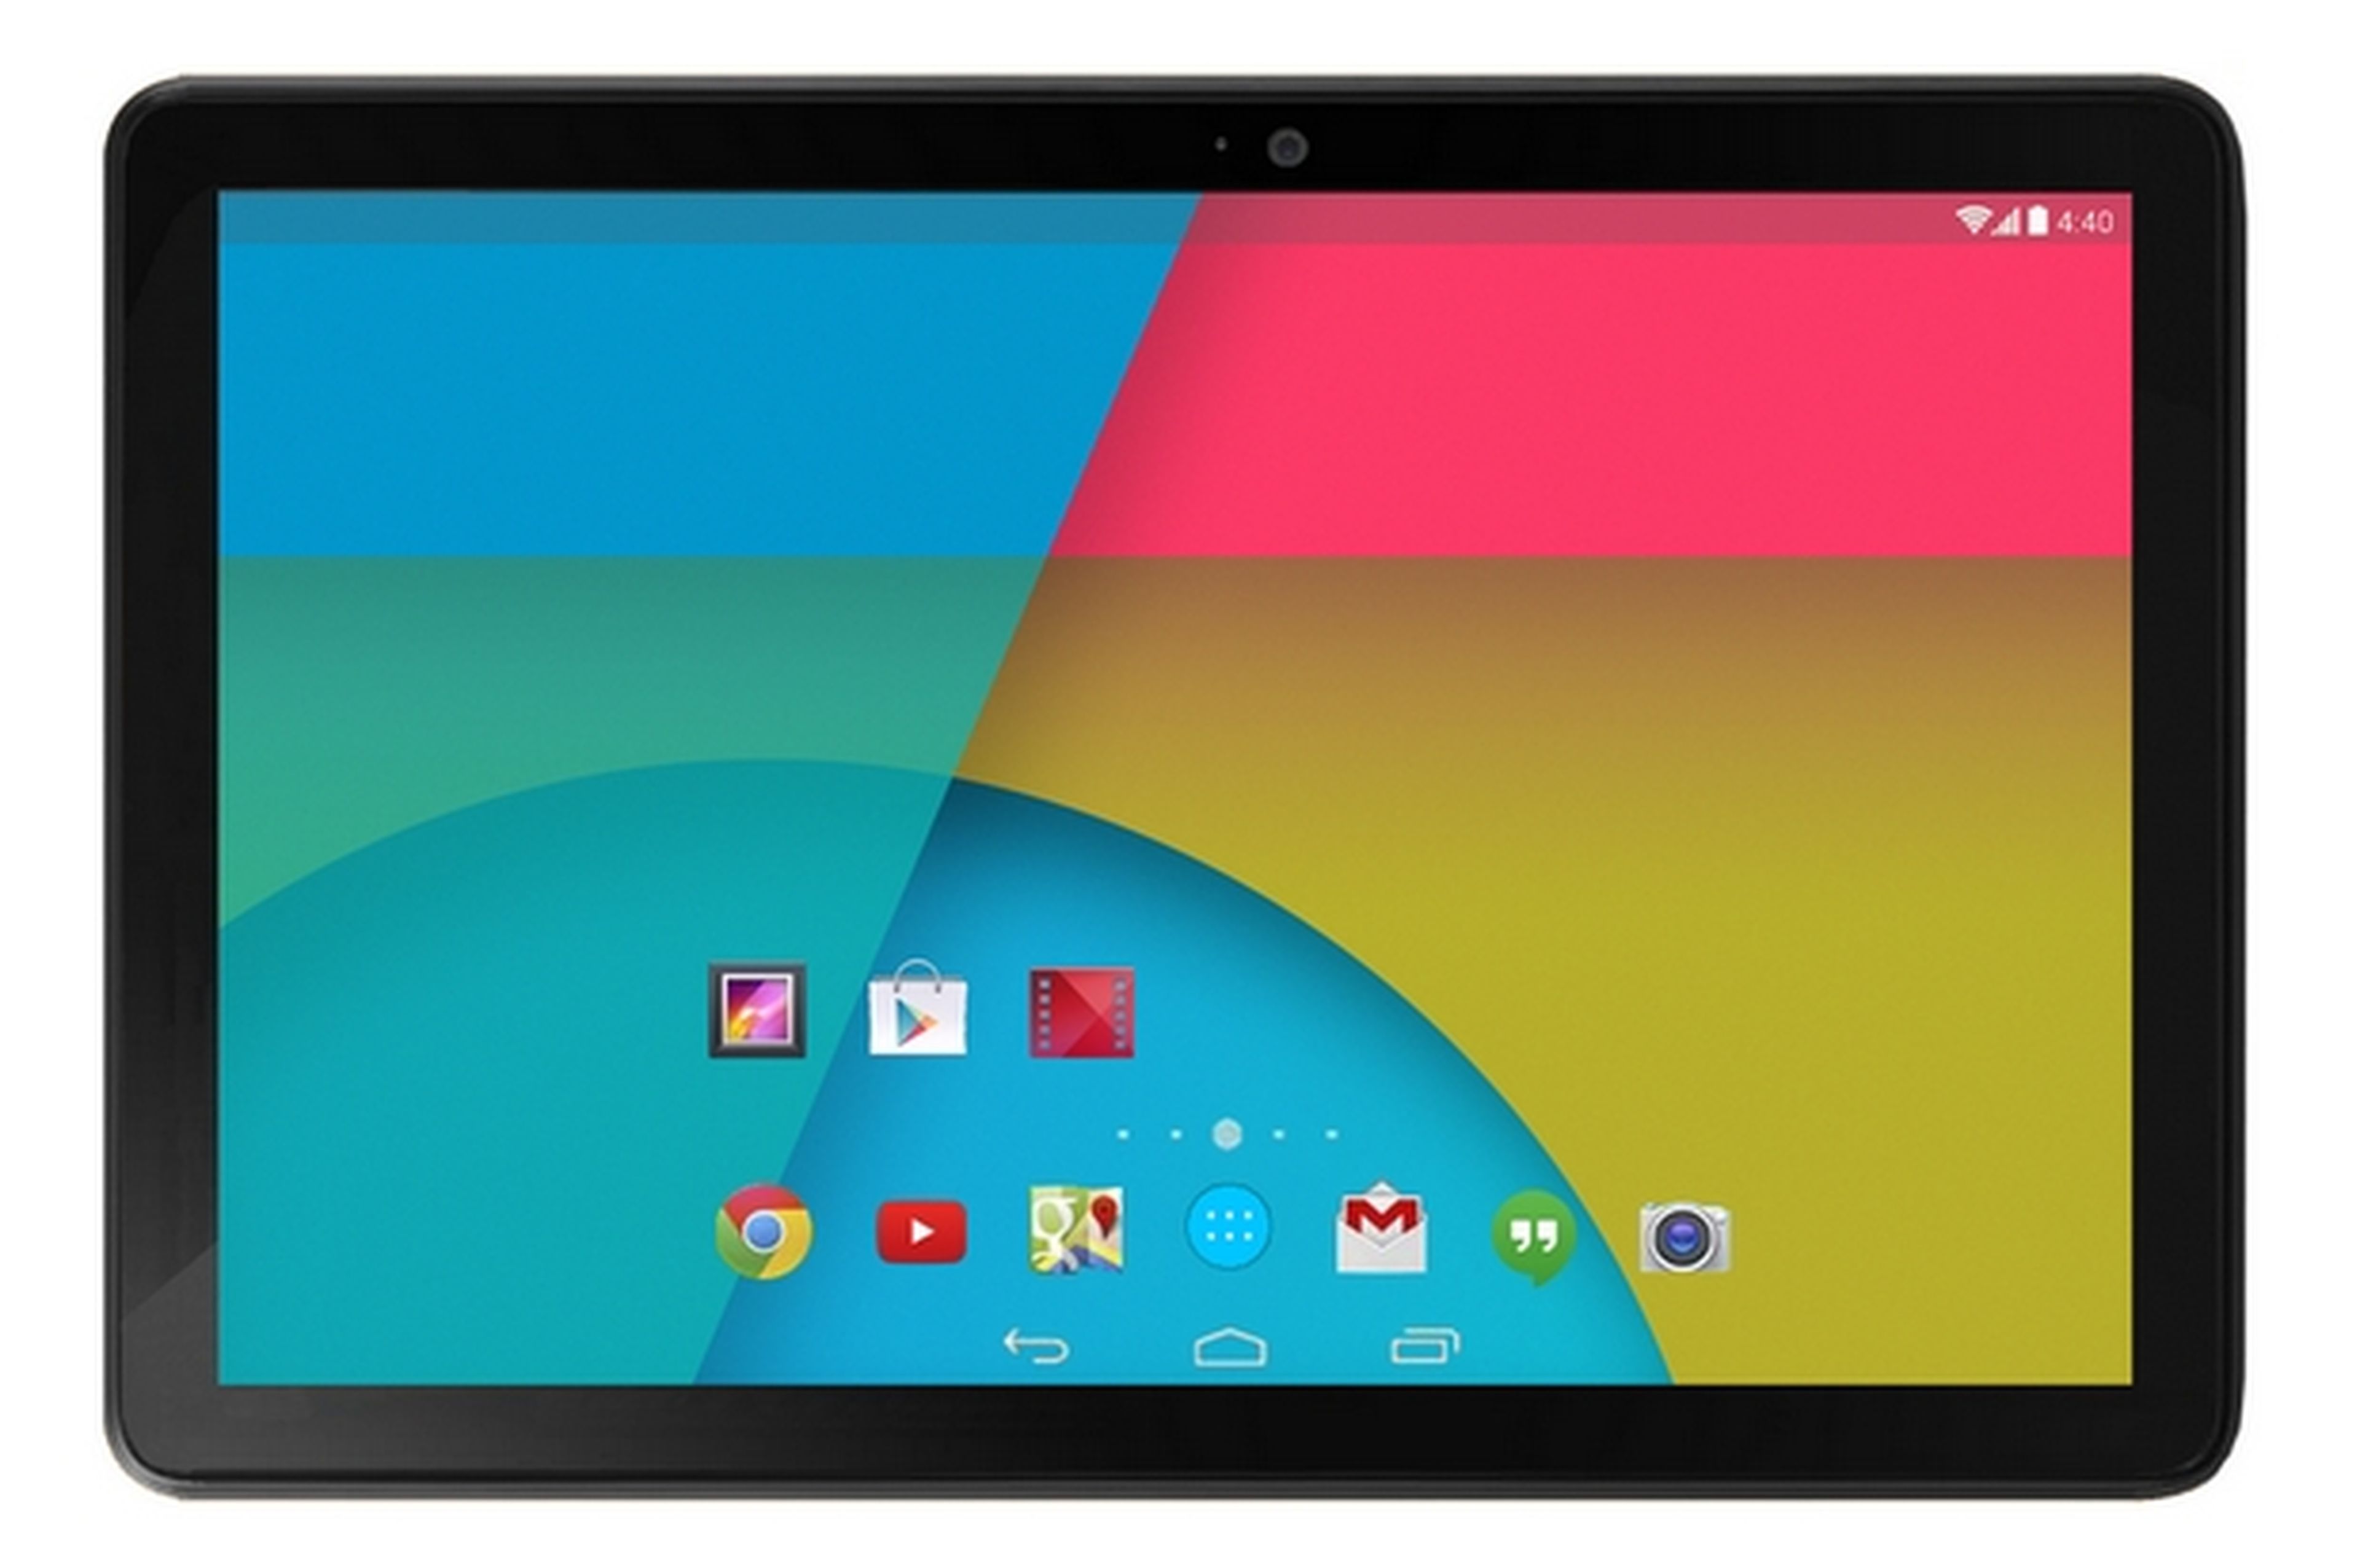 Supuestas características oficiales de la nueva tablet Nexus 10 2013